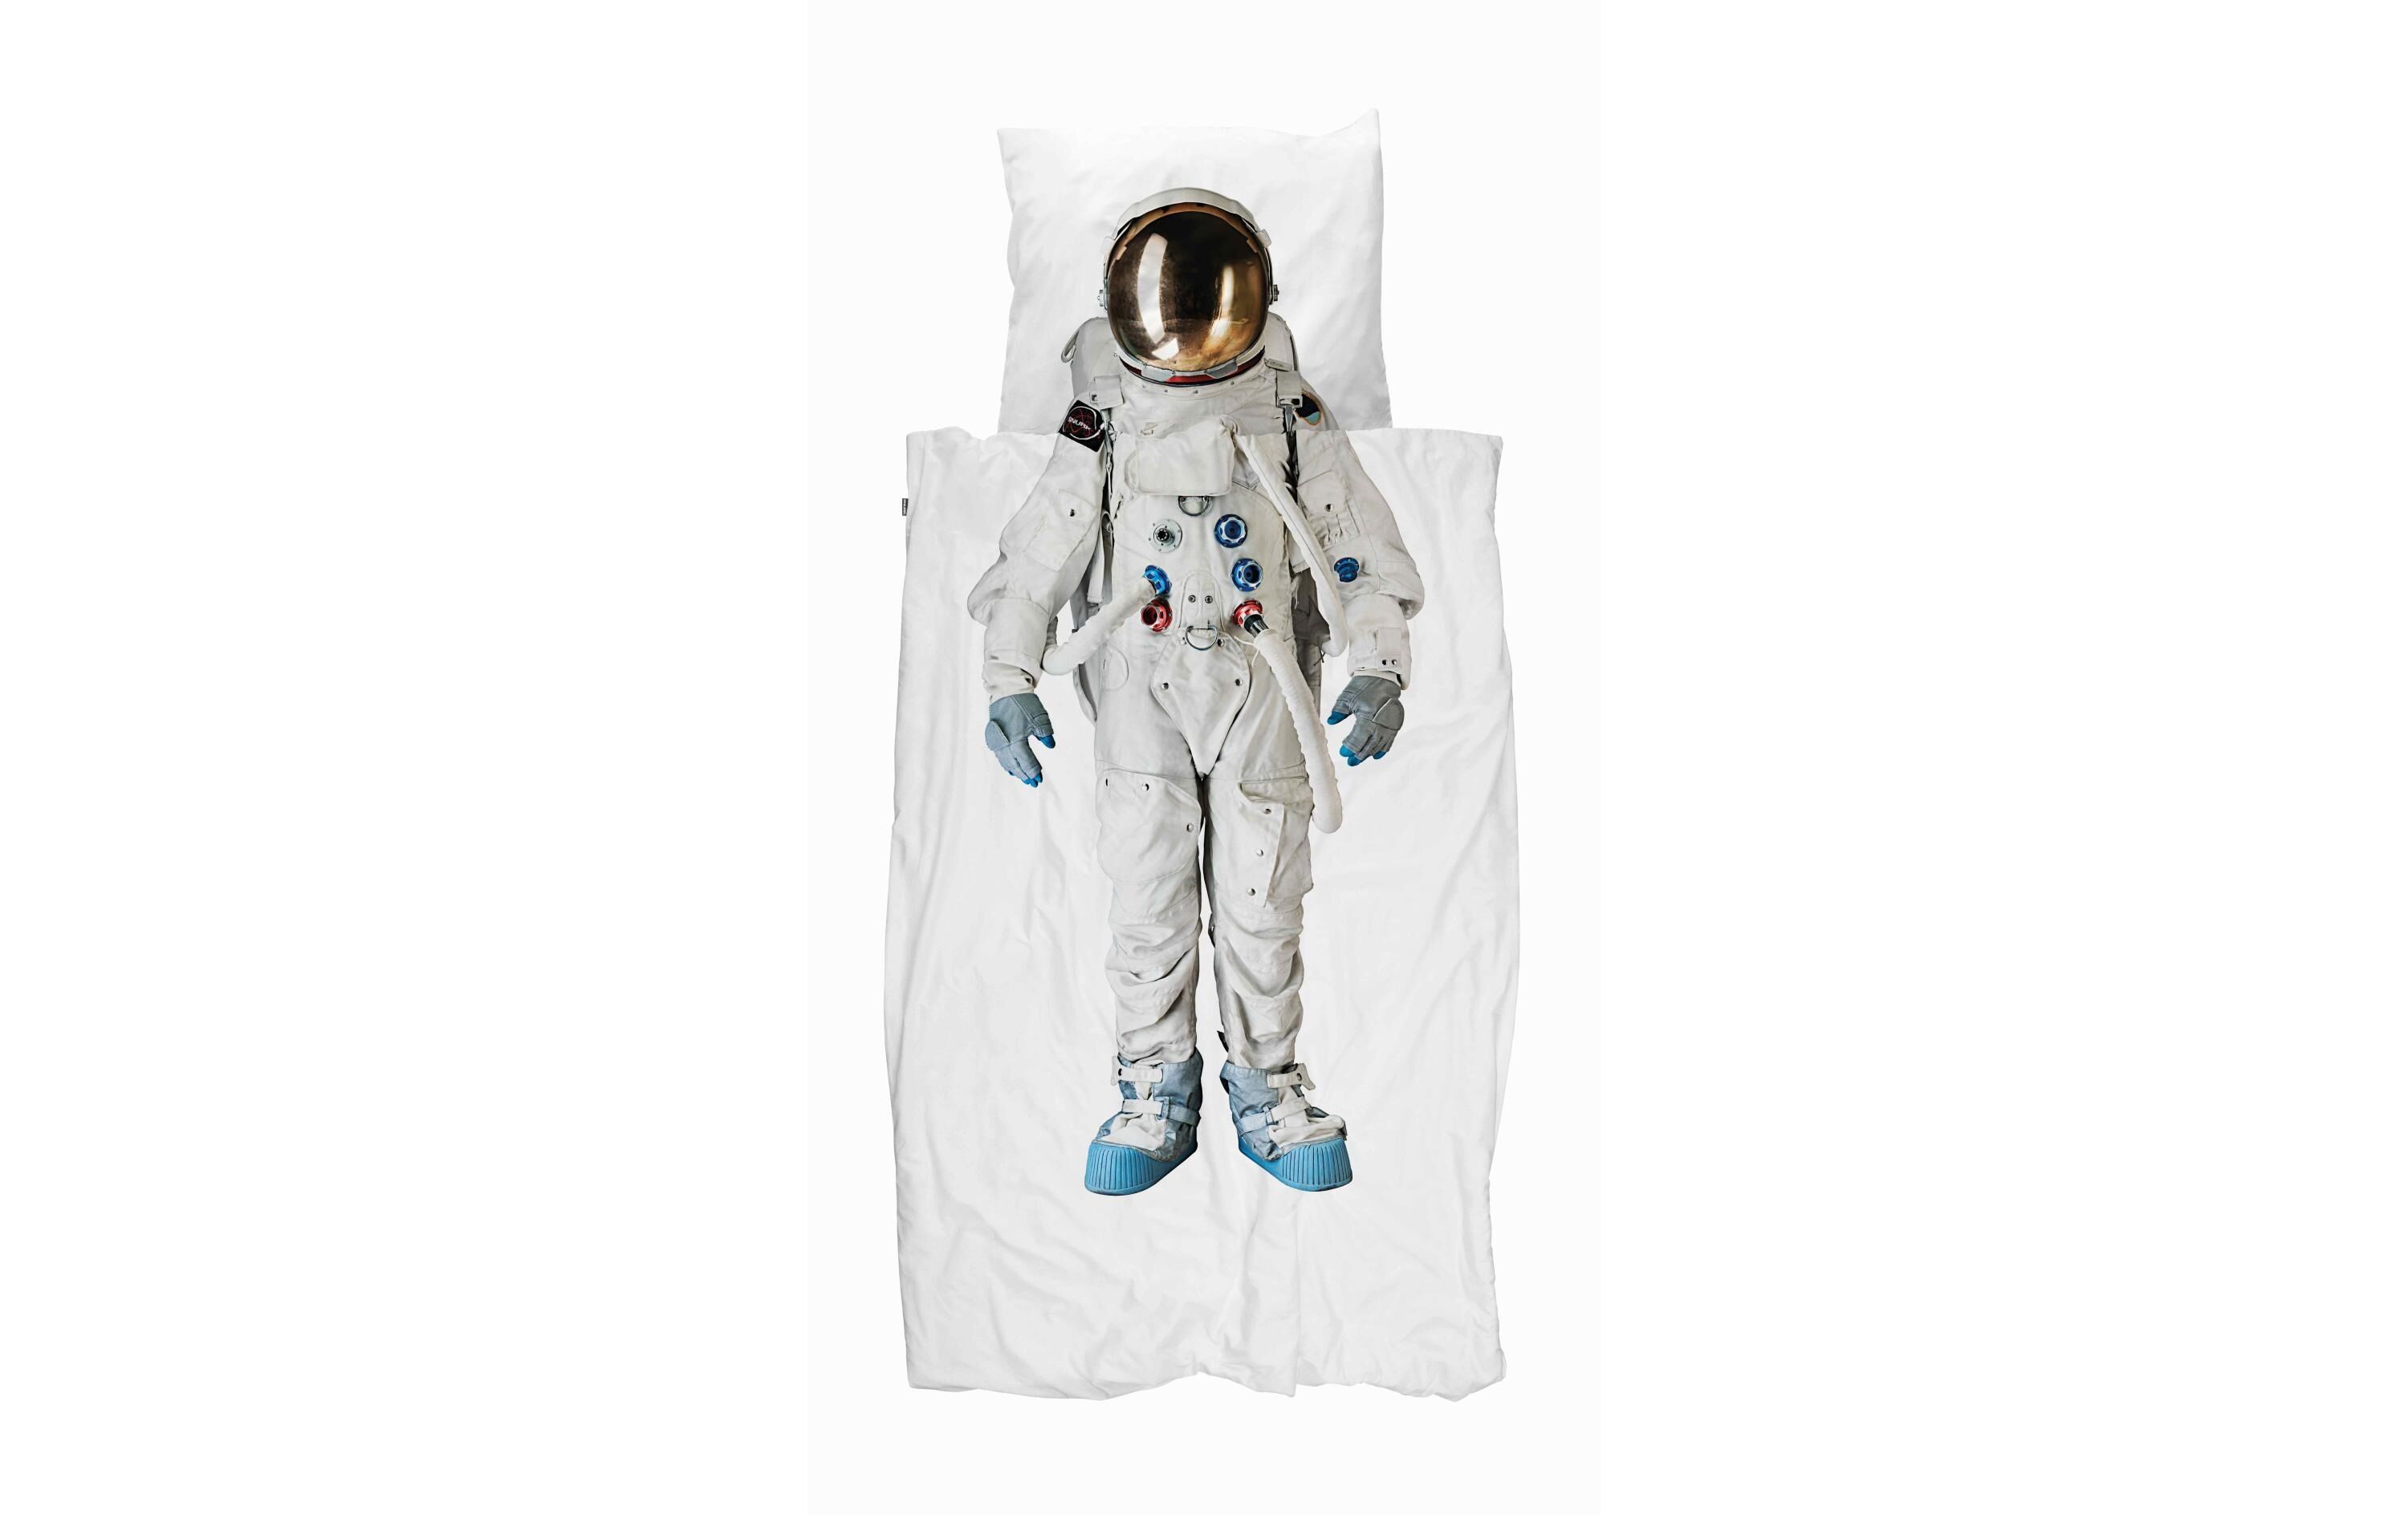 Snurk Kinderbettwäsche »Astronaut Bettwäschegarnitur« weiss